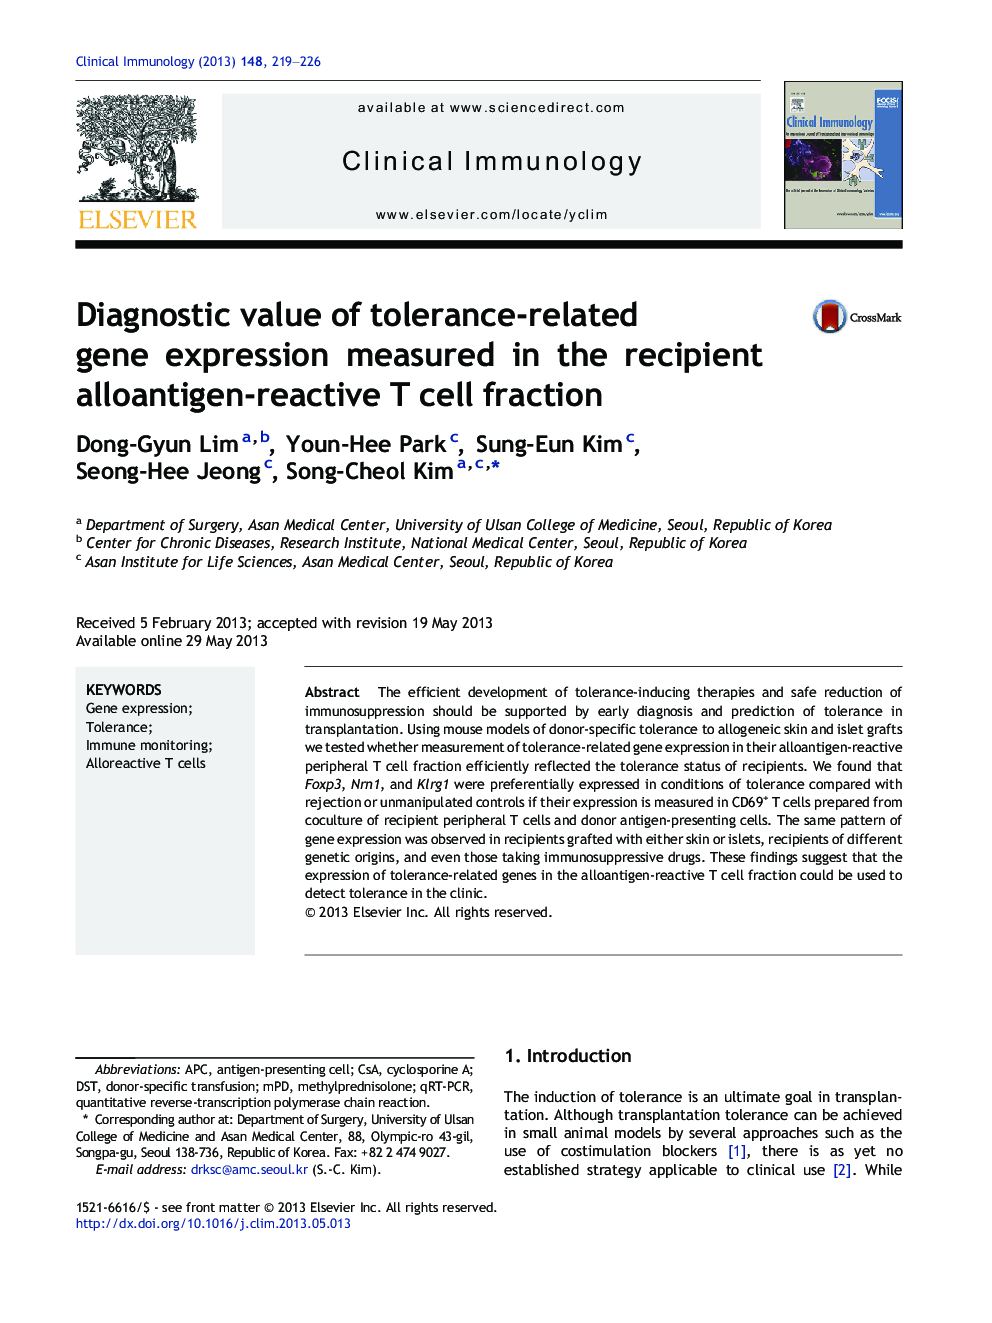 ارزش تشخیصی بیان ژن مربوط به تحمل اندازه گیری شده در گیرنده آلوآنتیژن-واکنش پذیر کسر سلولی 